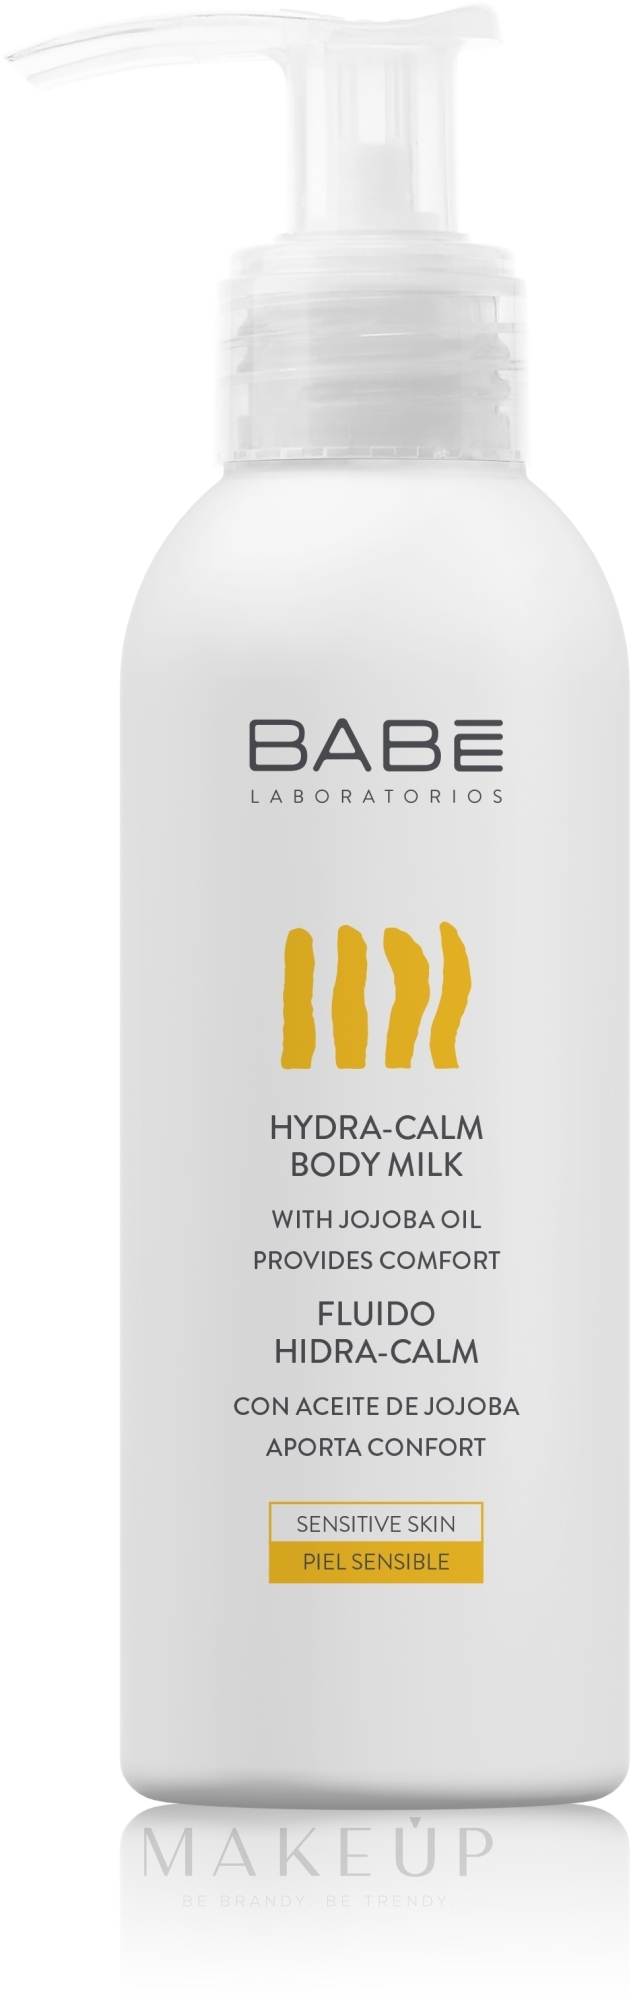 Feuchtigkeitsspendende Körpermilch mit Jojobaöl - Babe Laboratorios Hydra-Calm Body Milk Travel Size — Bild 100 ml